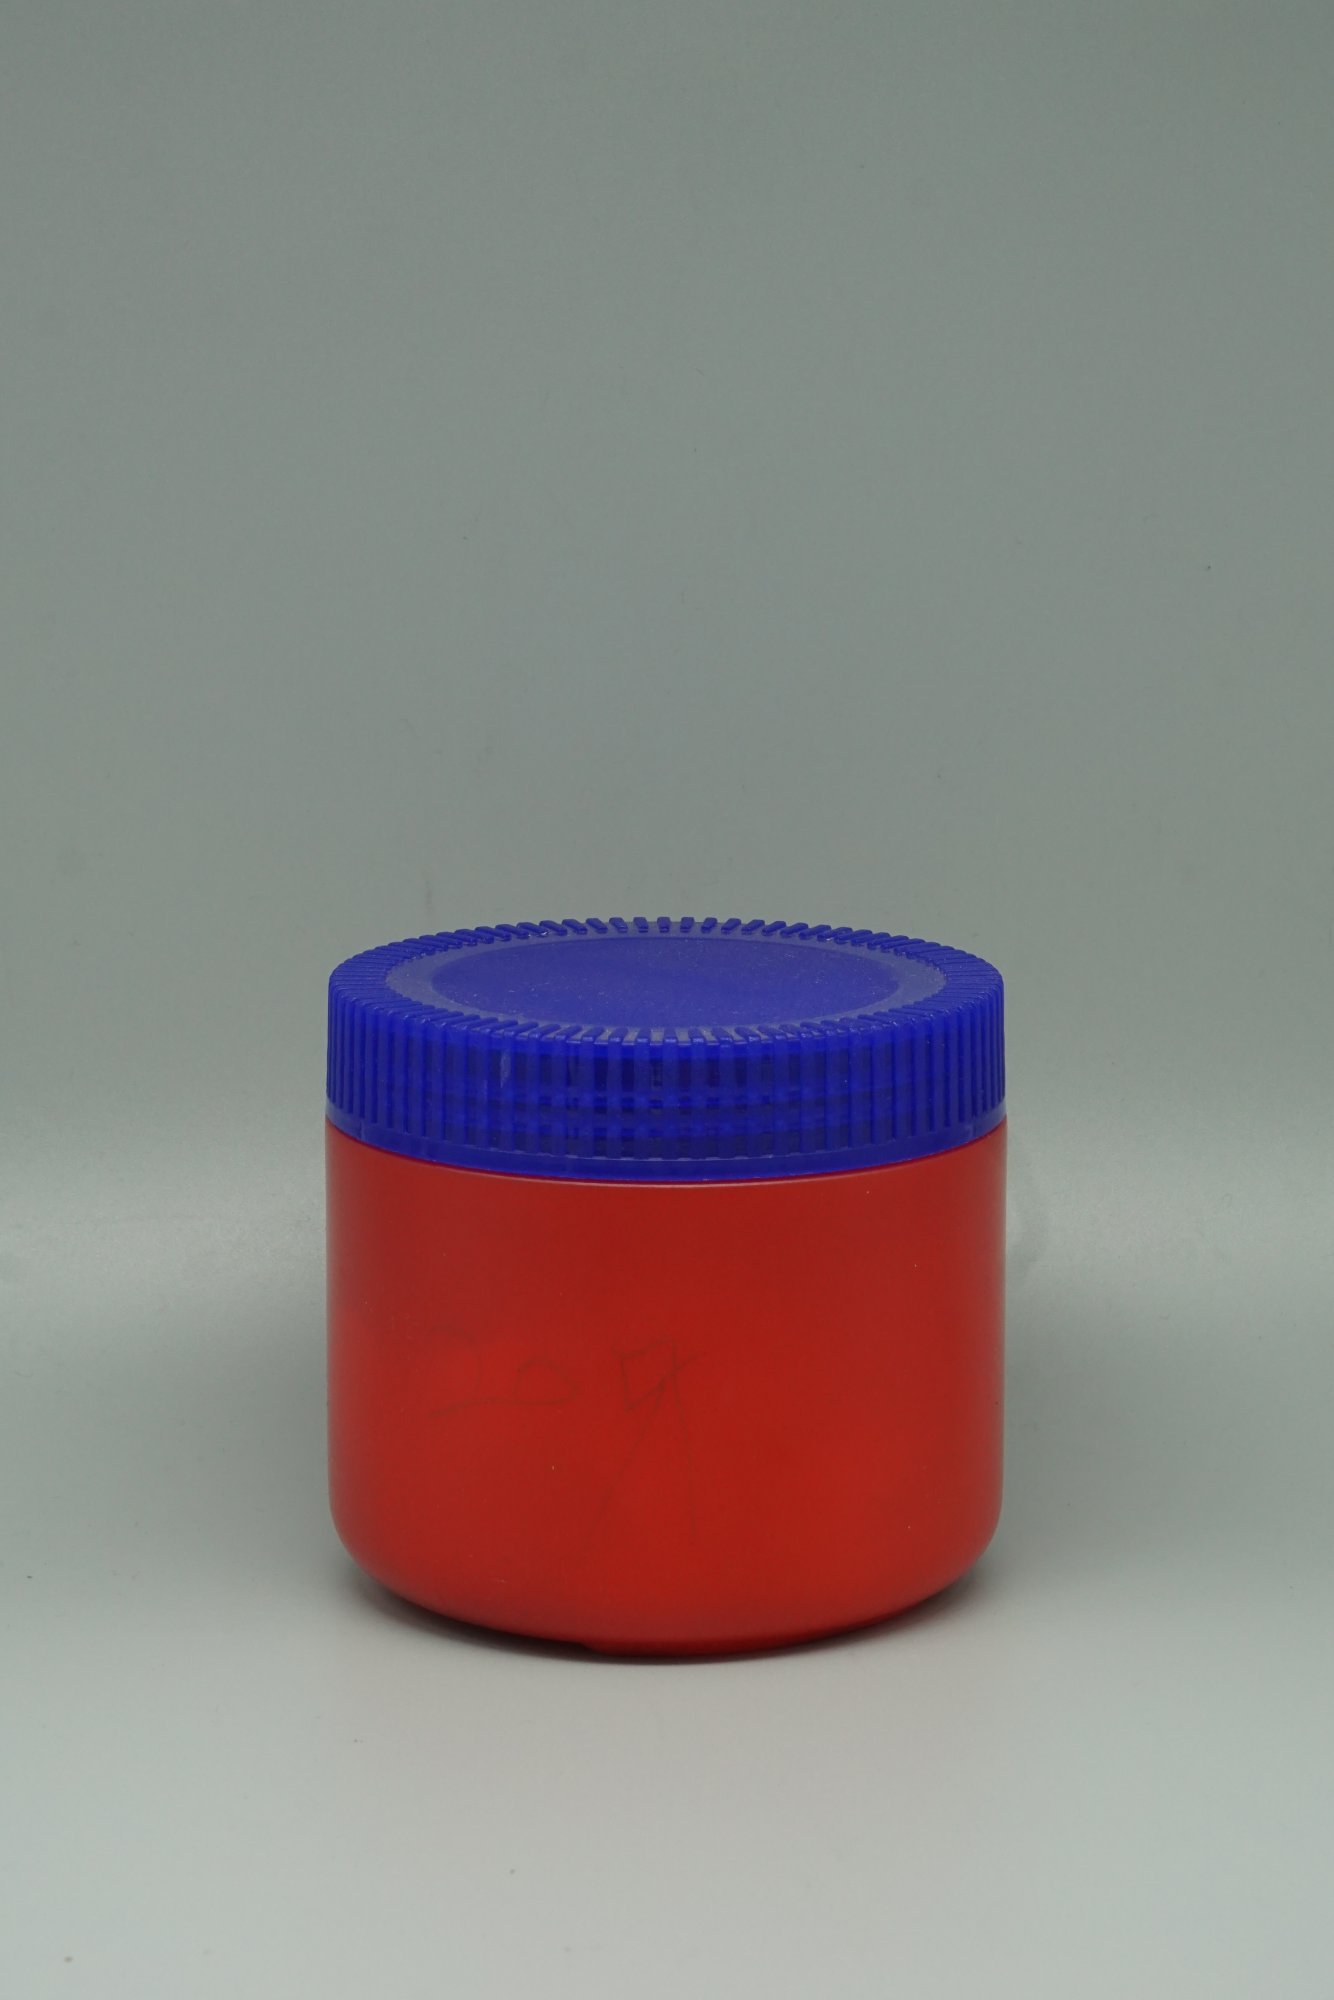 PE乳霜瓶 500ML (BD001_500)